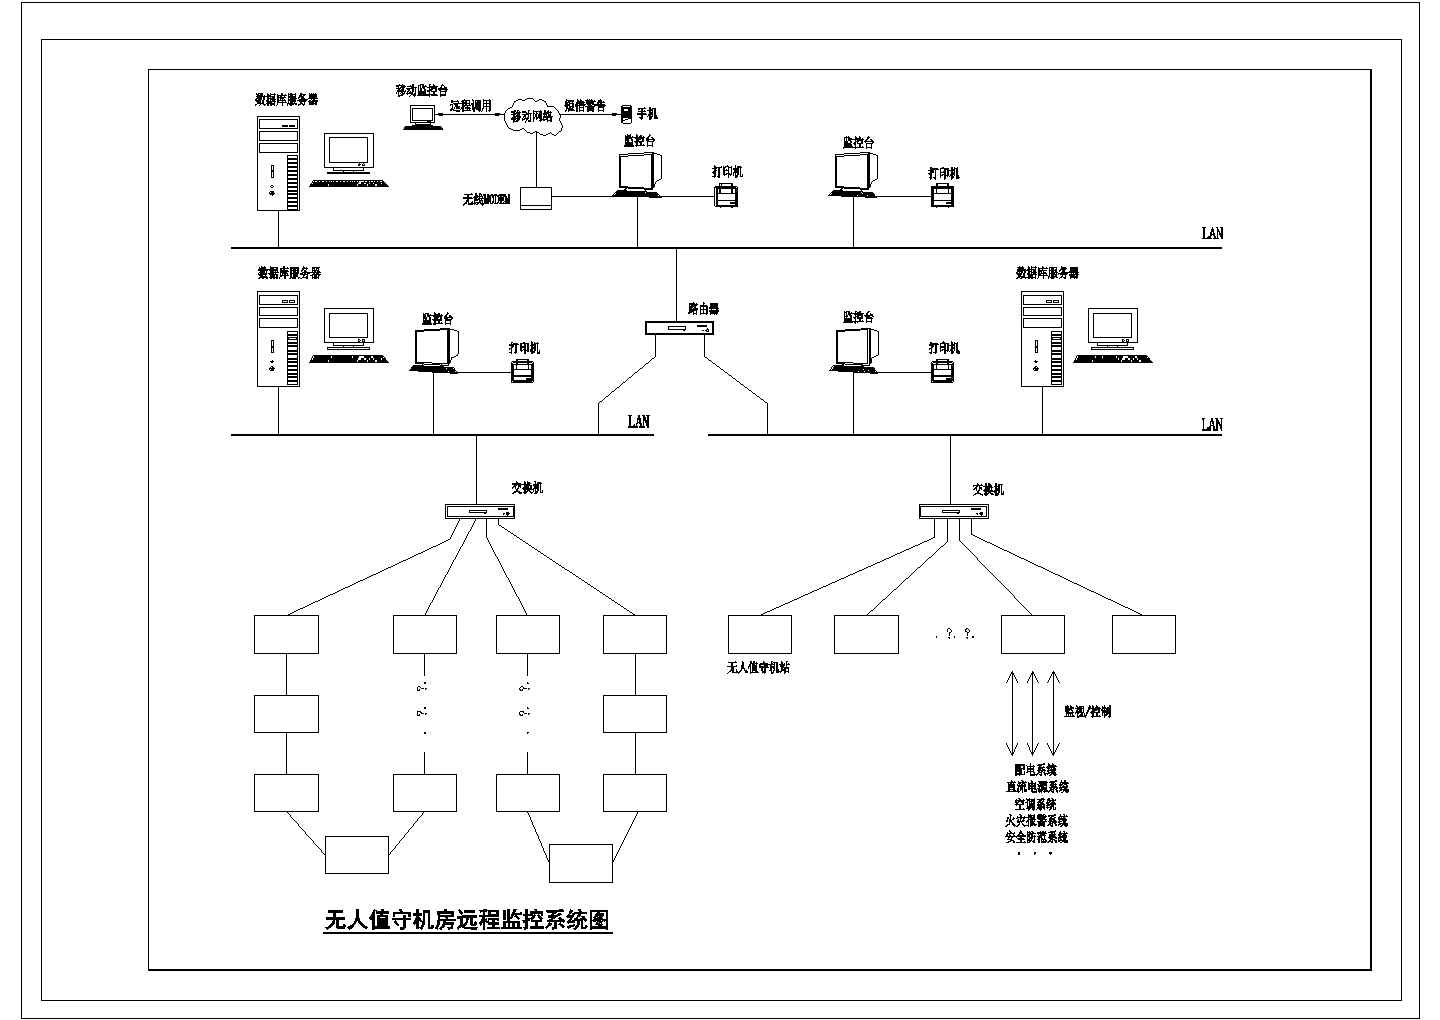 无人值守机房远程监控系统图（09DX009图集40页电子版描图）